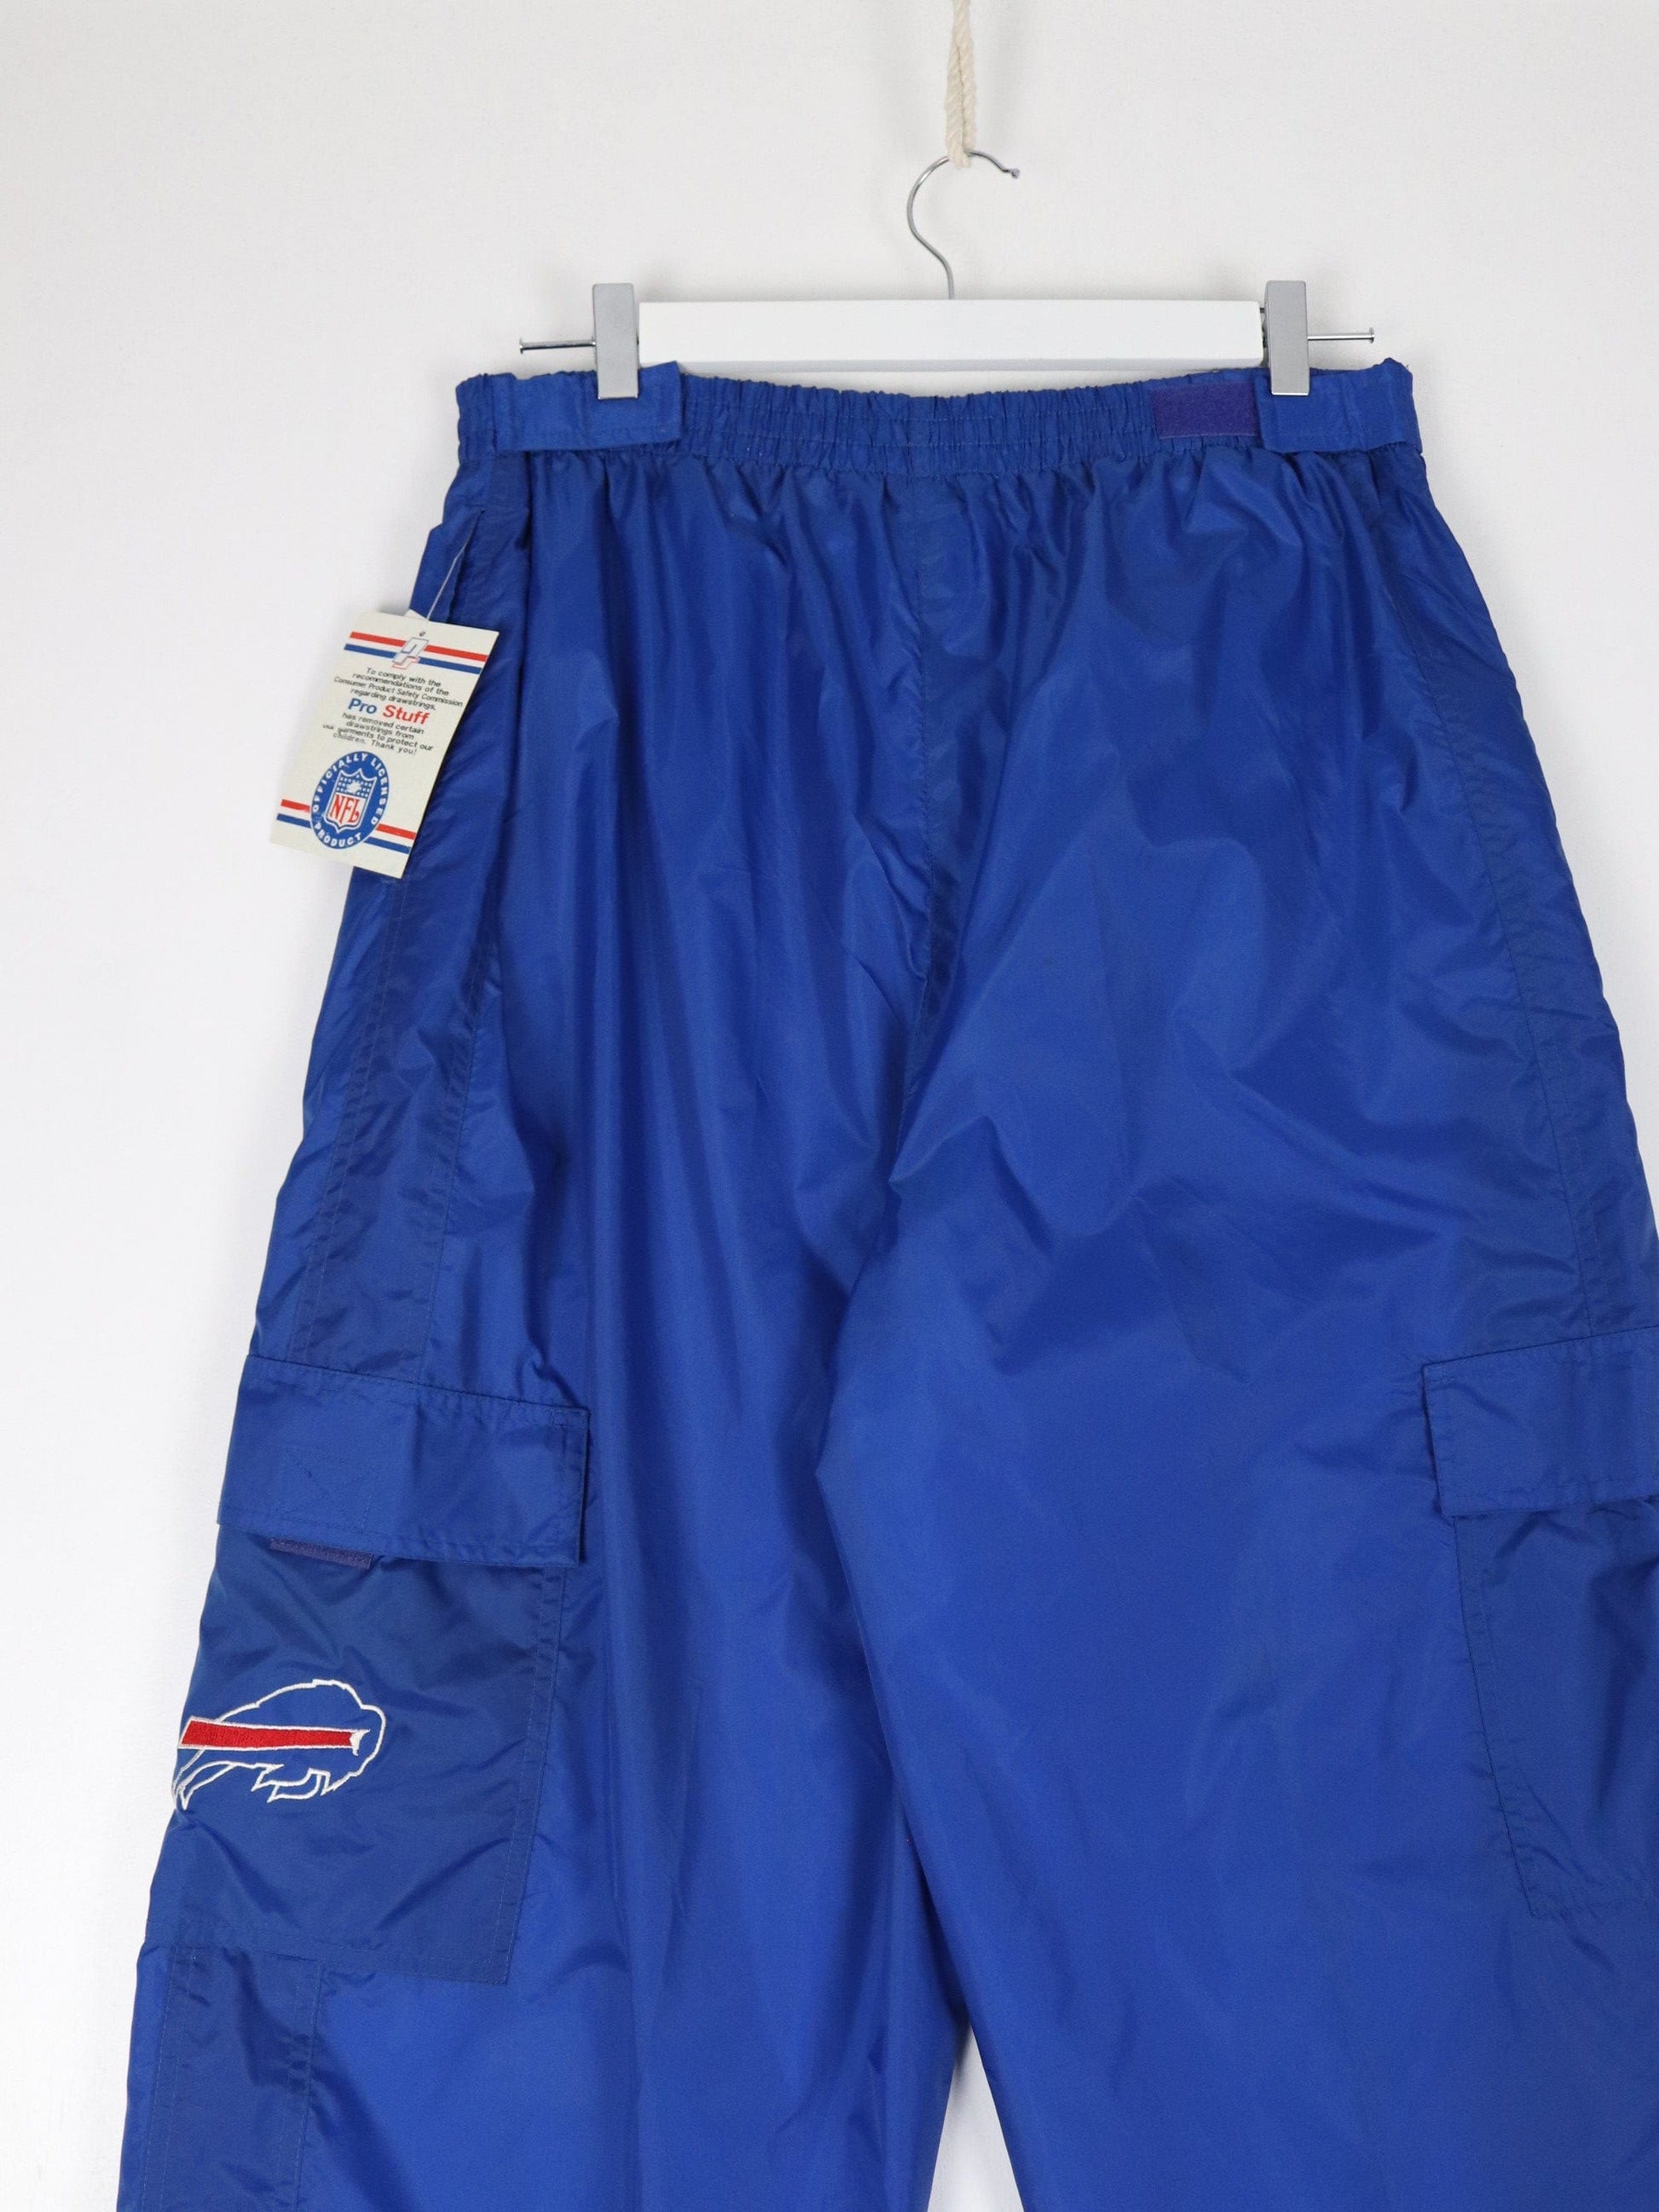 NFL Trackpants Vintage Buffalo Bills Pants Mens Large Blue Track Cargo Athletic NFL